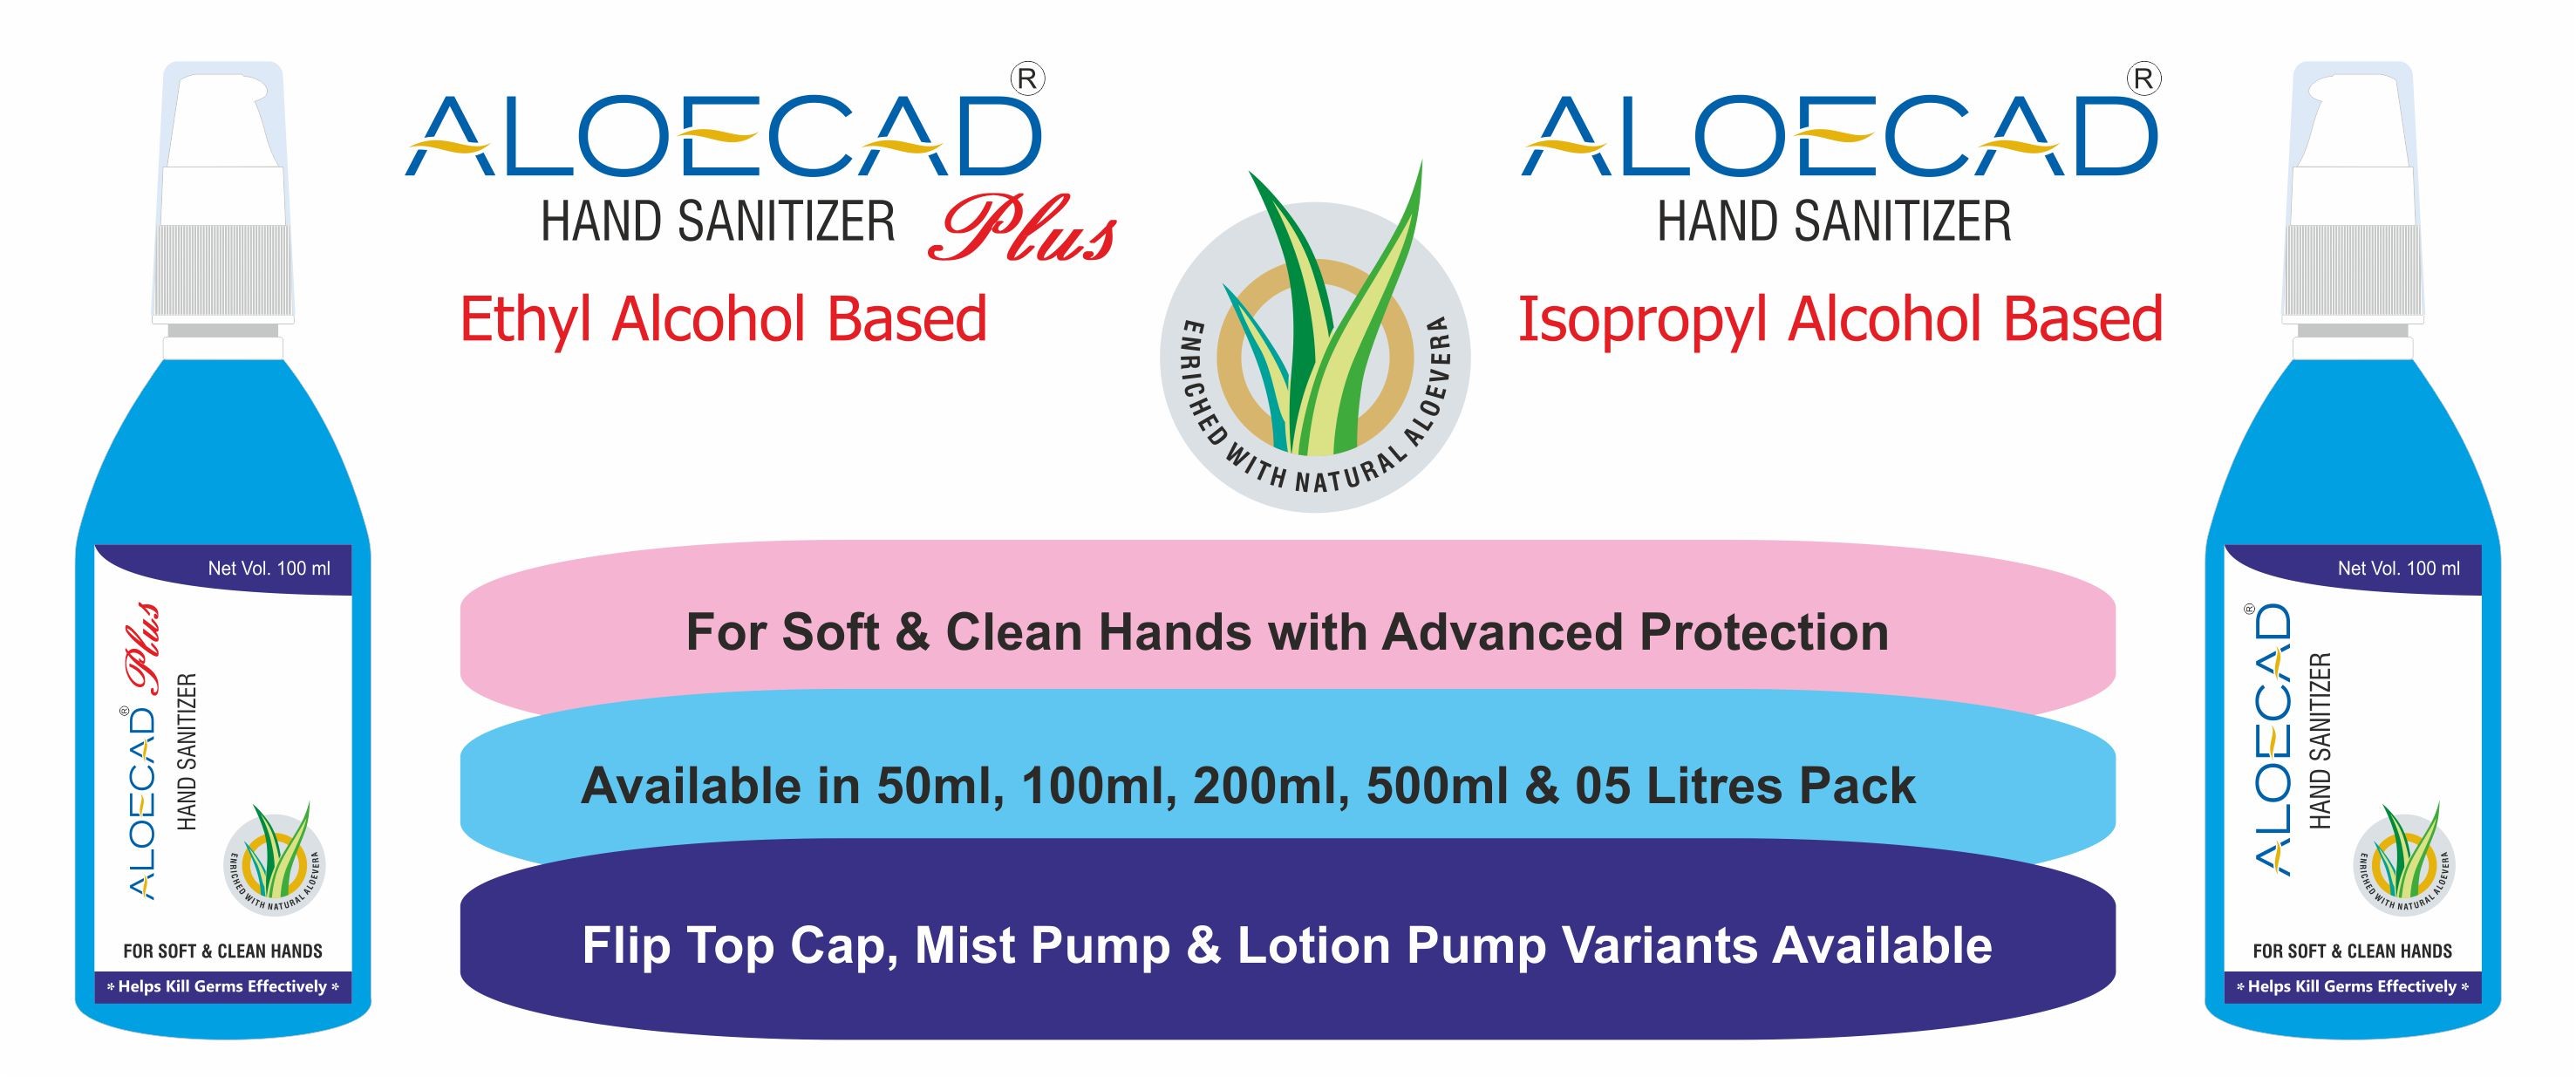 Aloecad Hand Sanitizer India